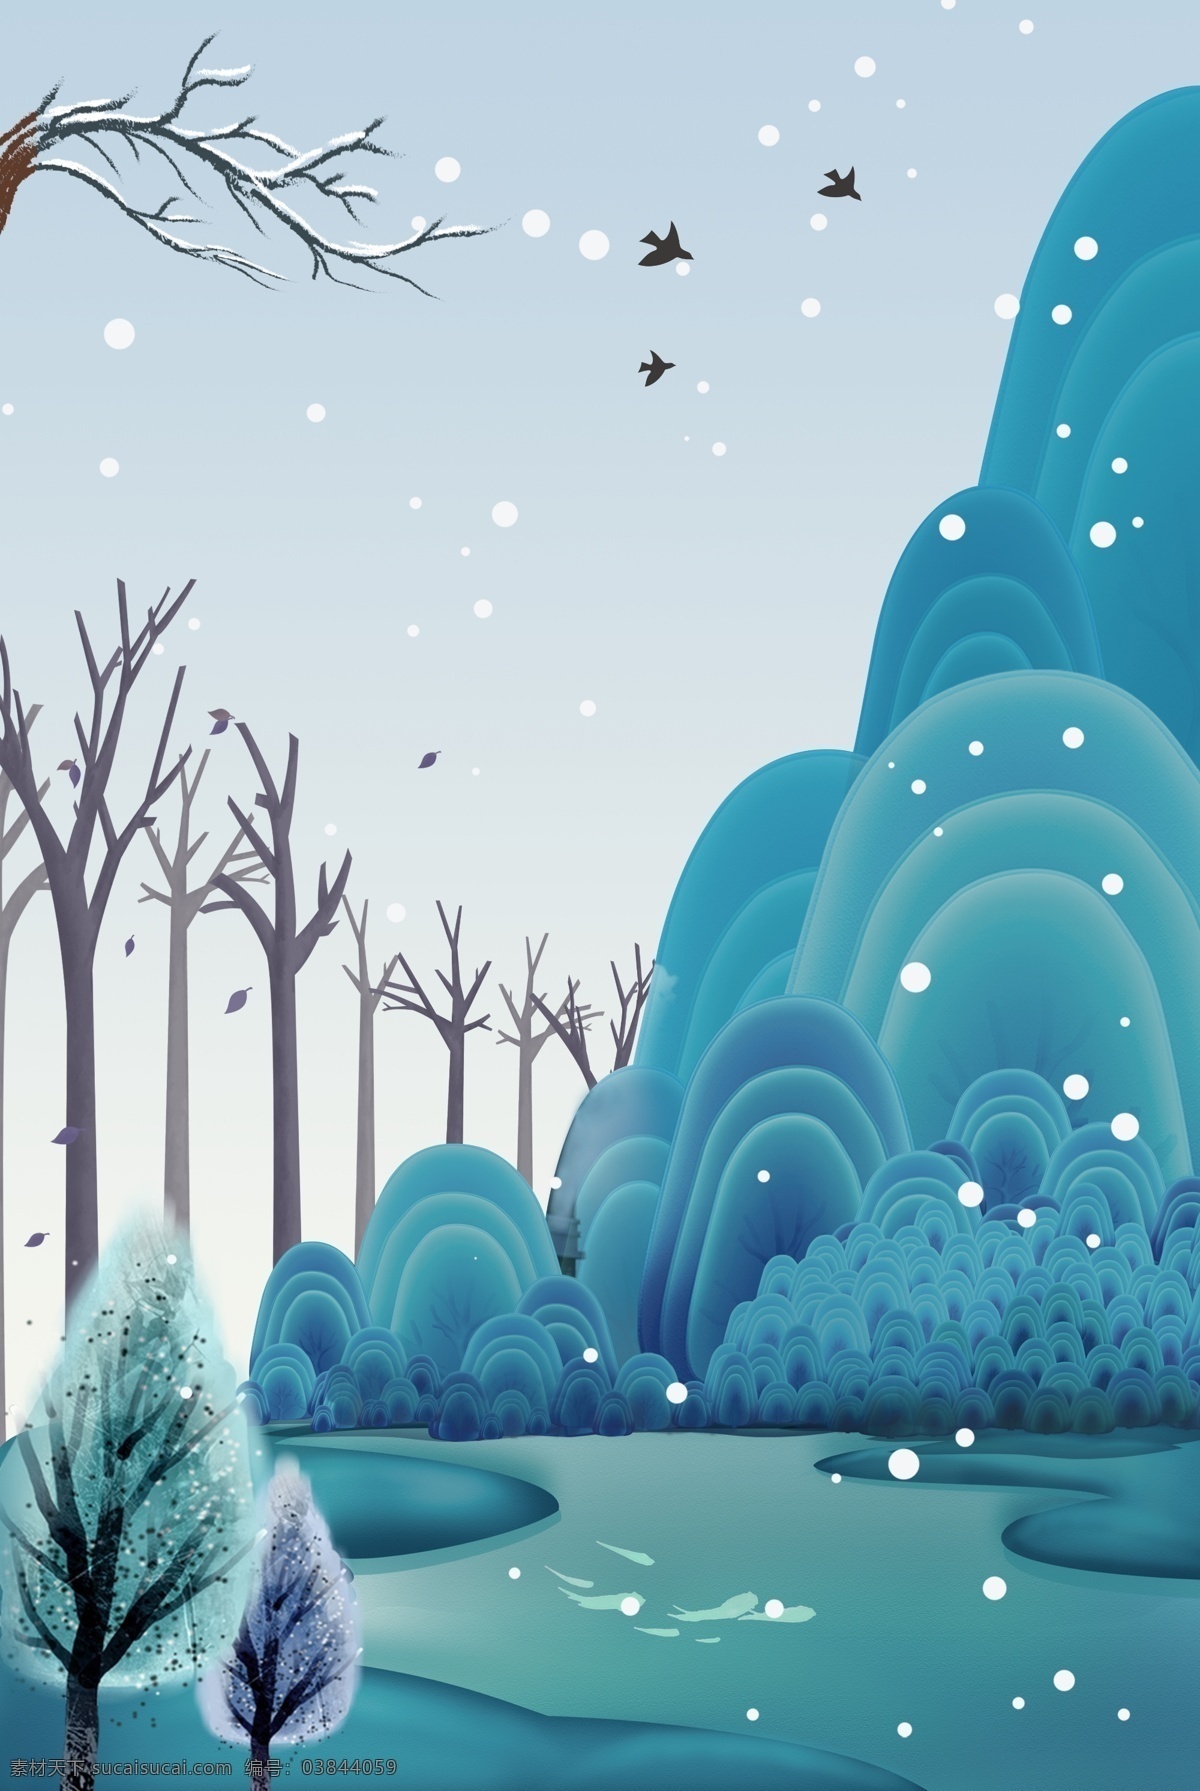 莫 兰迪 简约 手绘 山水 枯树 海报 莫兰迪 高端 大气 燕子 祠堂 下雪